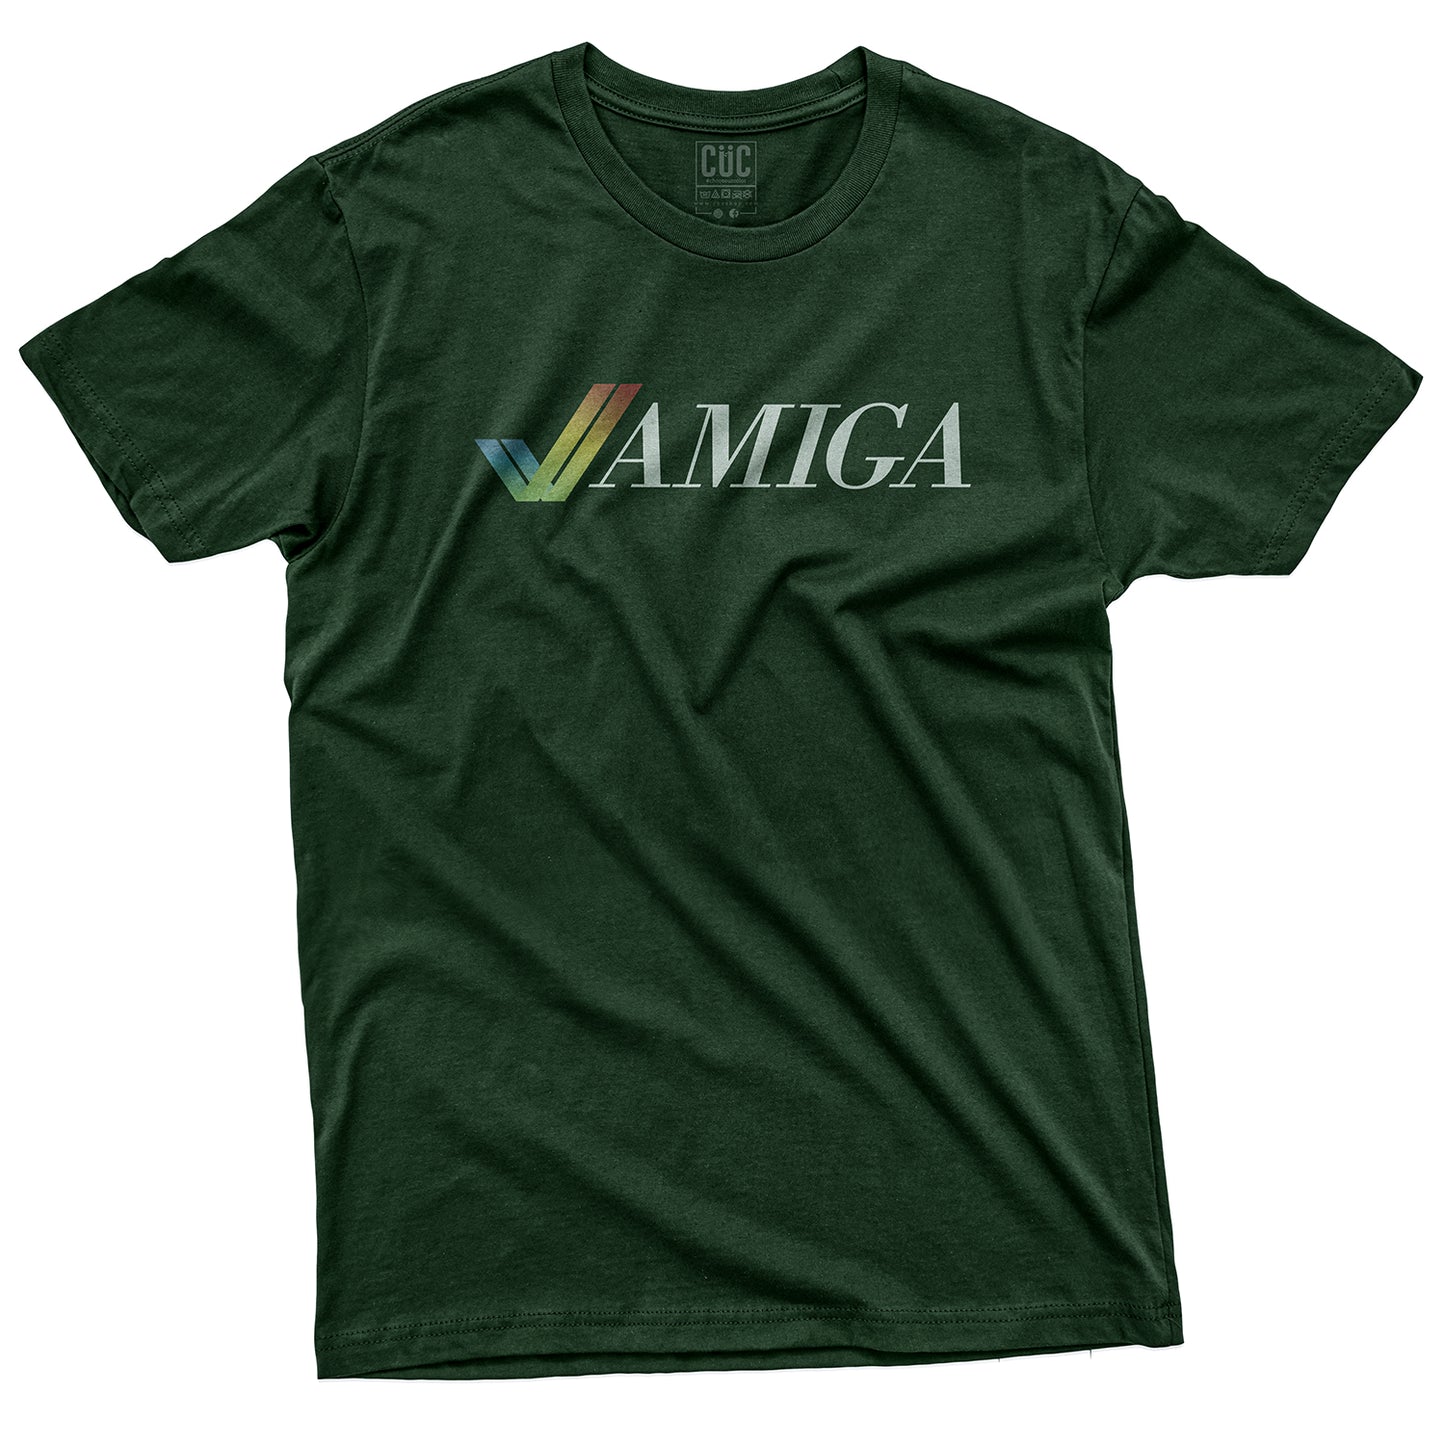 CUC T-Shirt  AMIGA 1985 - Retro Love - Cult - Vintage #chooseurcolor